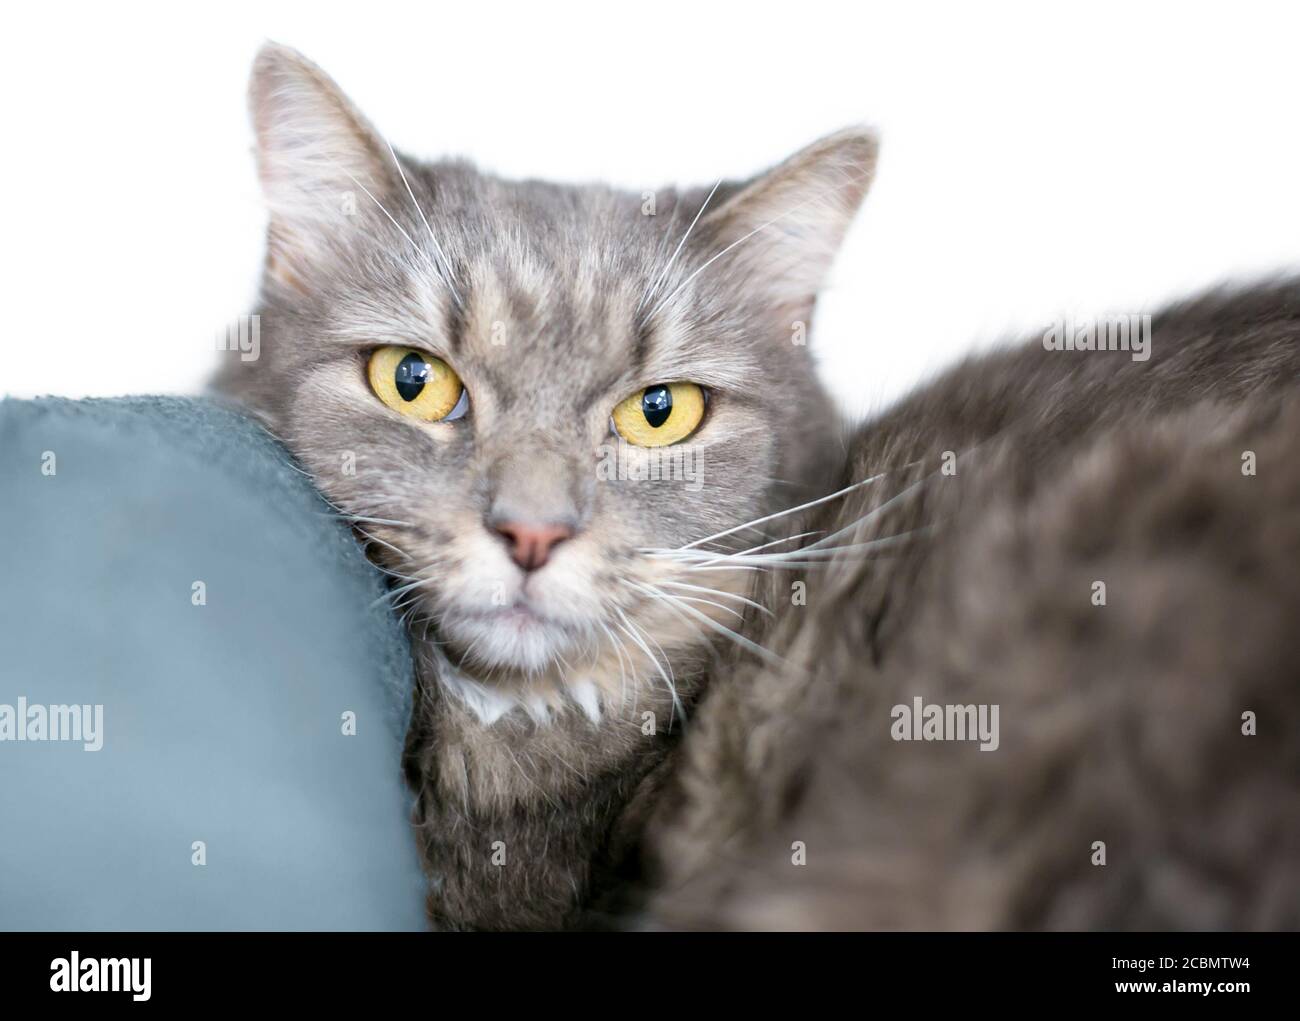 Un chat gris tabby shorthair avec des yeux jaunes qui le reposent tête sur un oreiller Banque D'Images